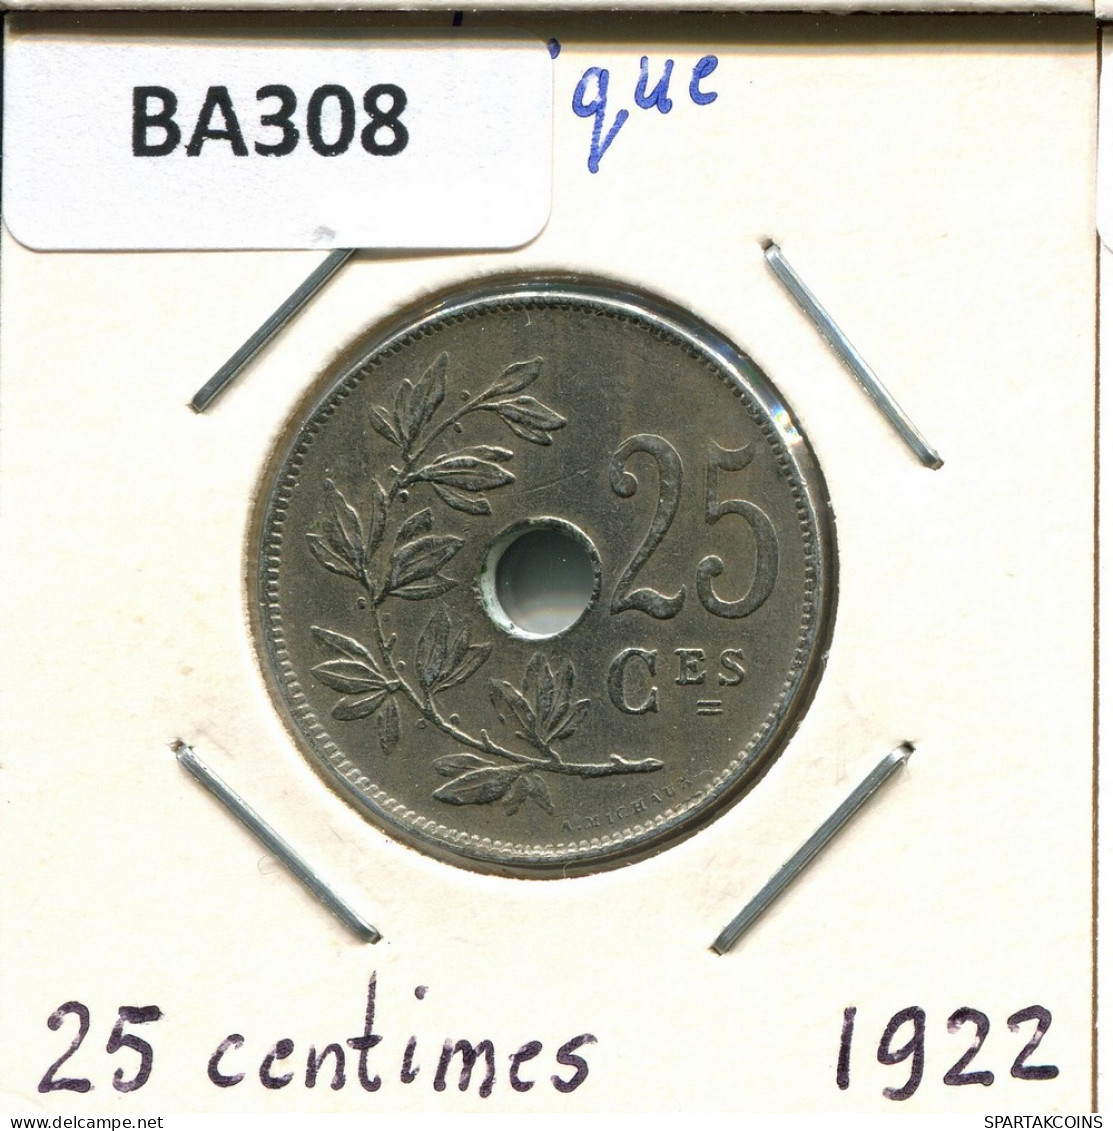 25 CENTIMES 1922 FRENCH Text BÉLGICA BELGIUM Moneda #BA308.E - 25 Cent